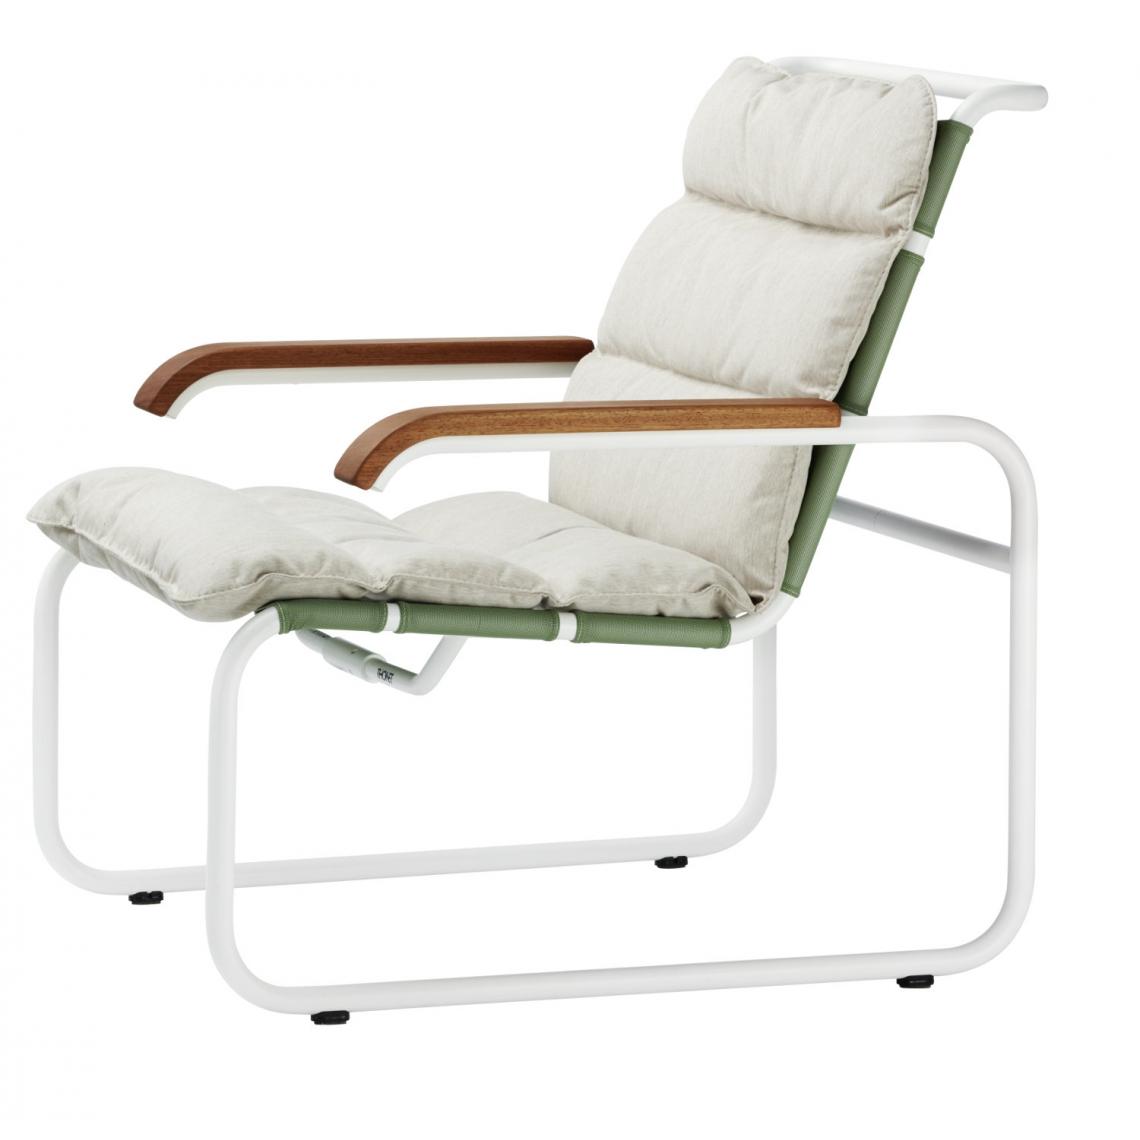 Thonet - Coussin pour chaise longue S 35 N All Seasons - carbone - Coussins, galettes de jardin